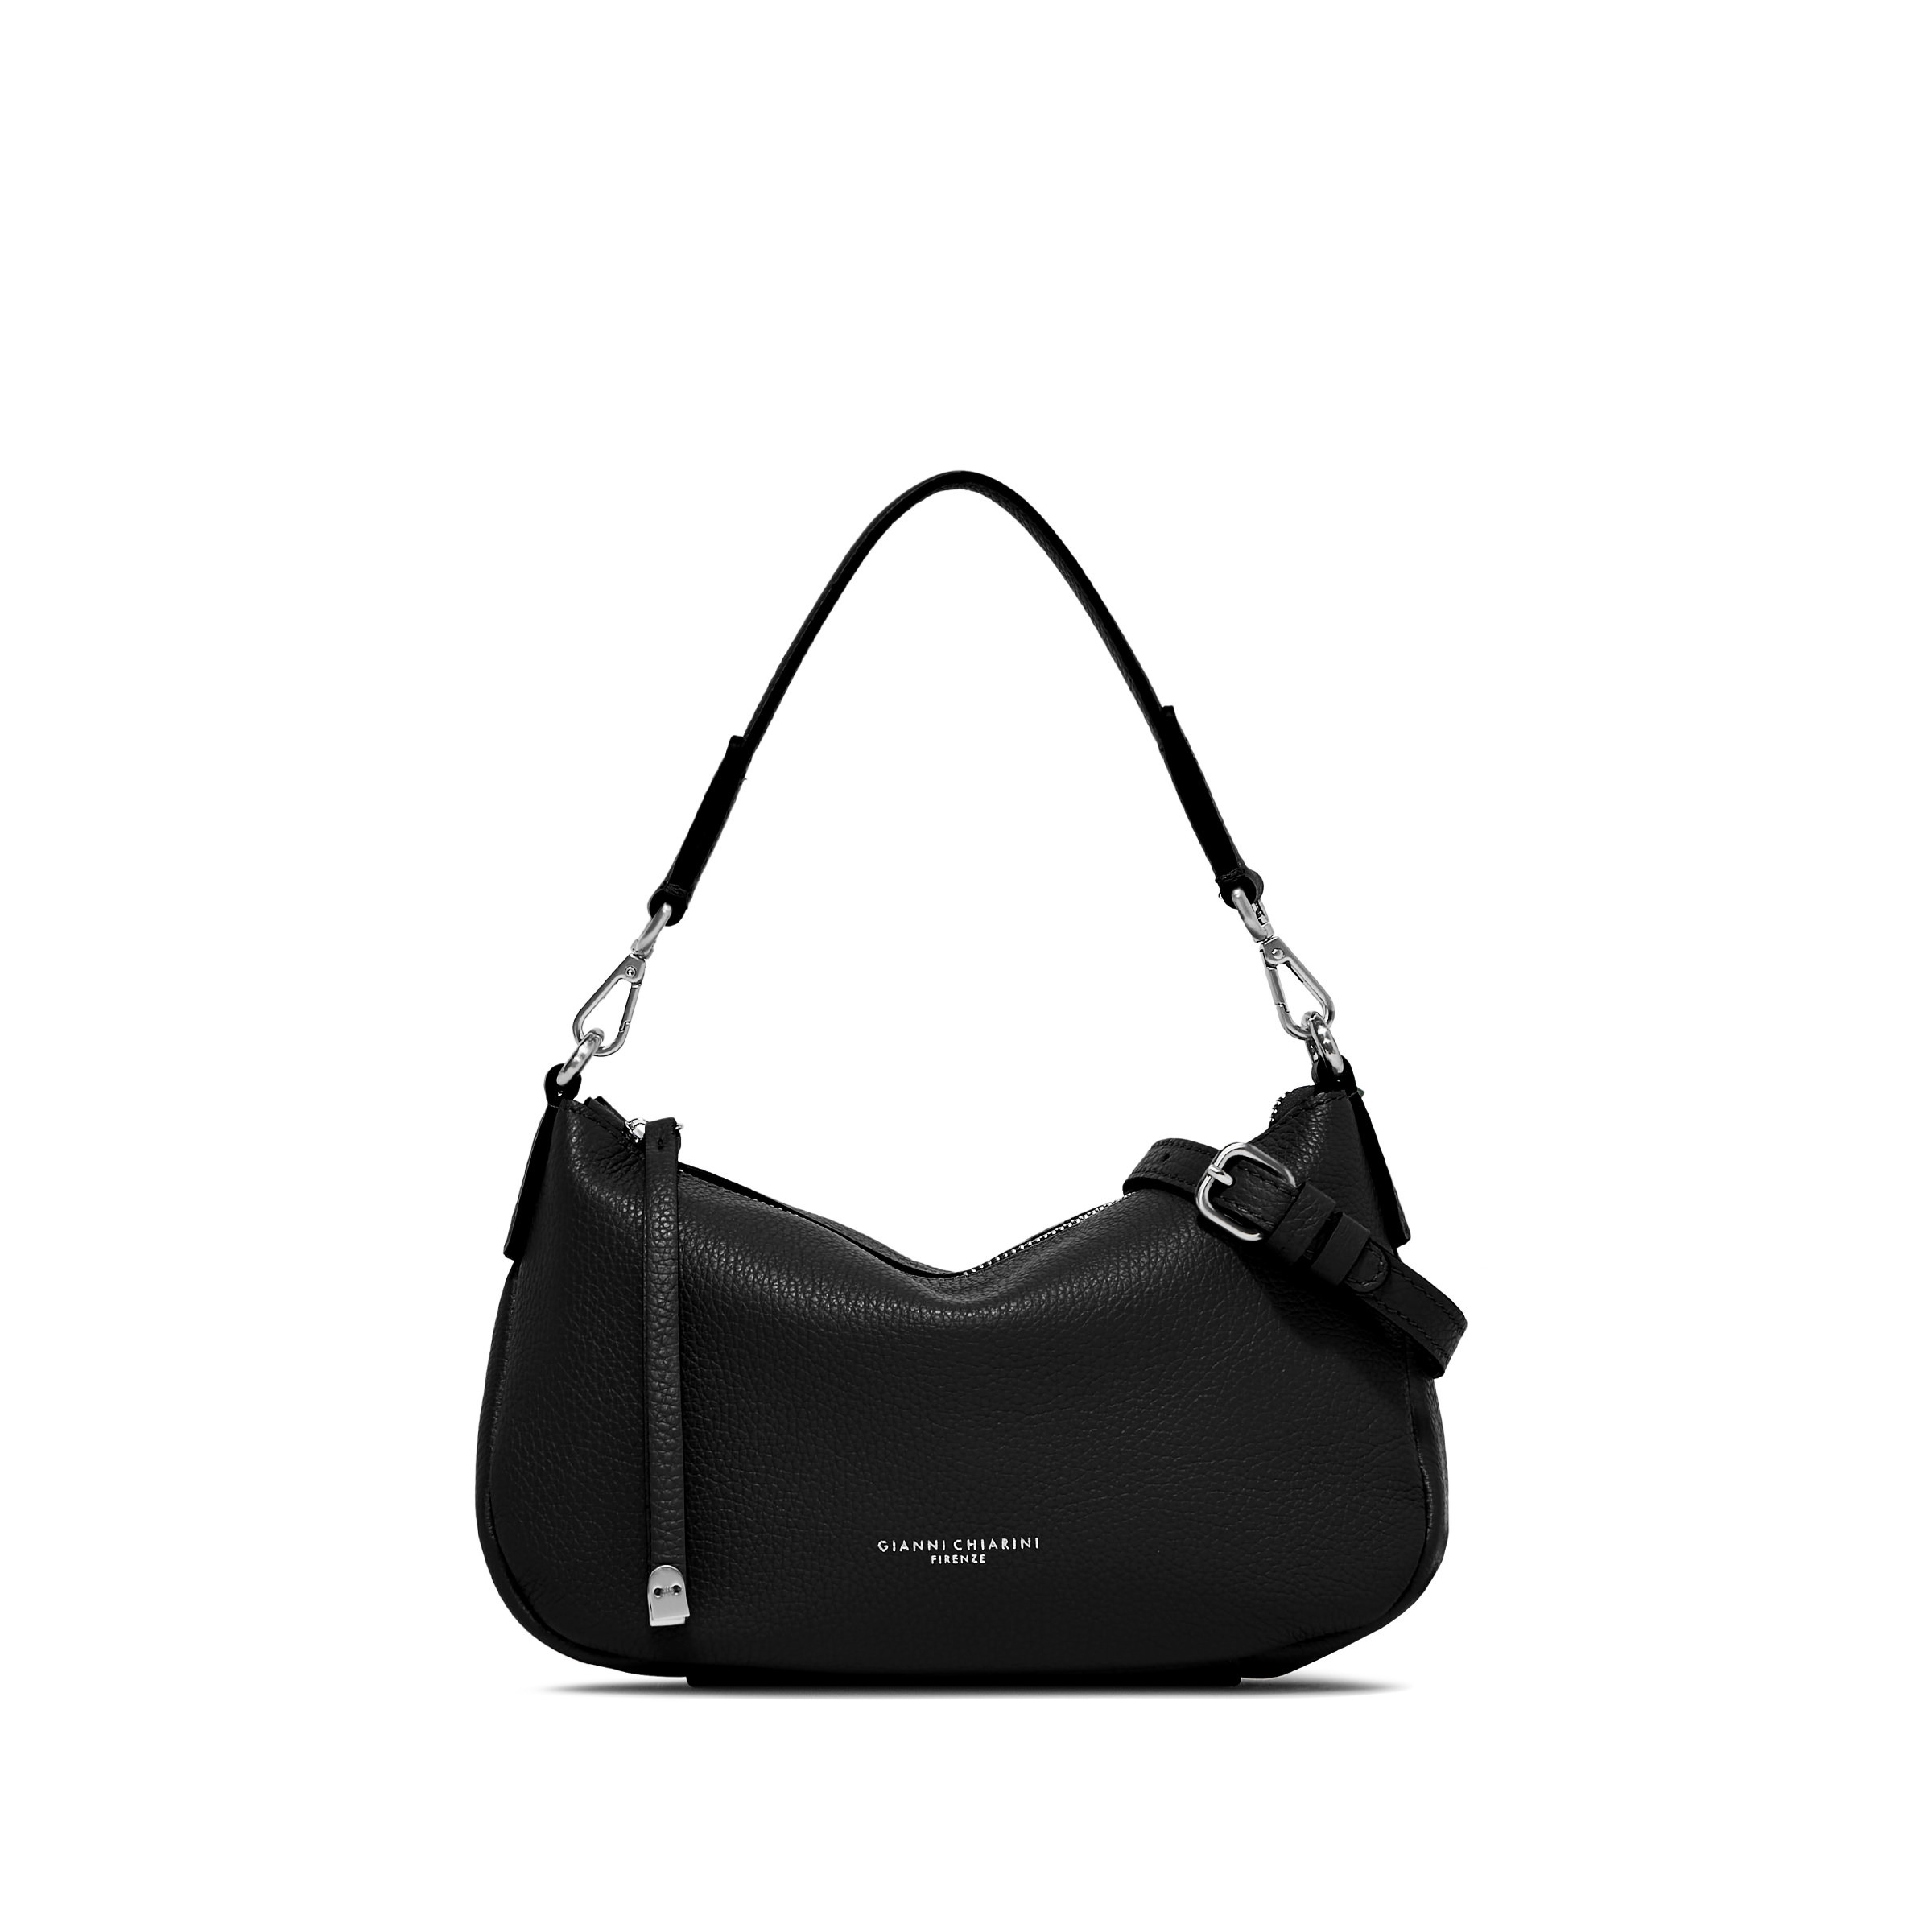 Gianni Chiarini - Nadia Leather bag, Black, large image number 1